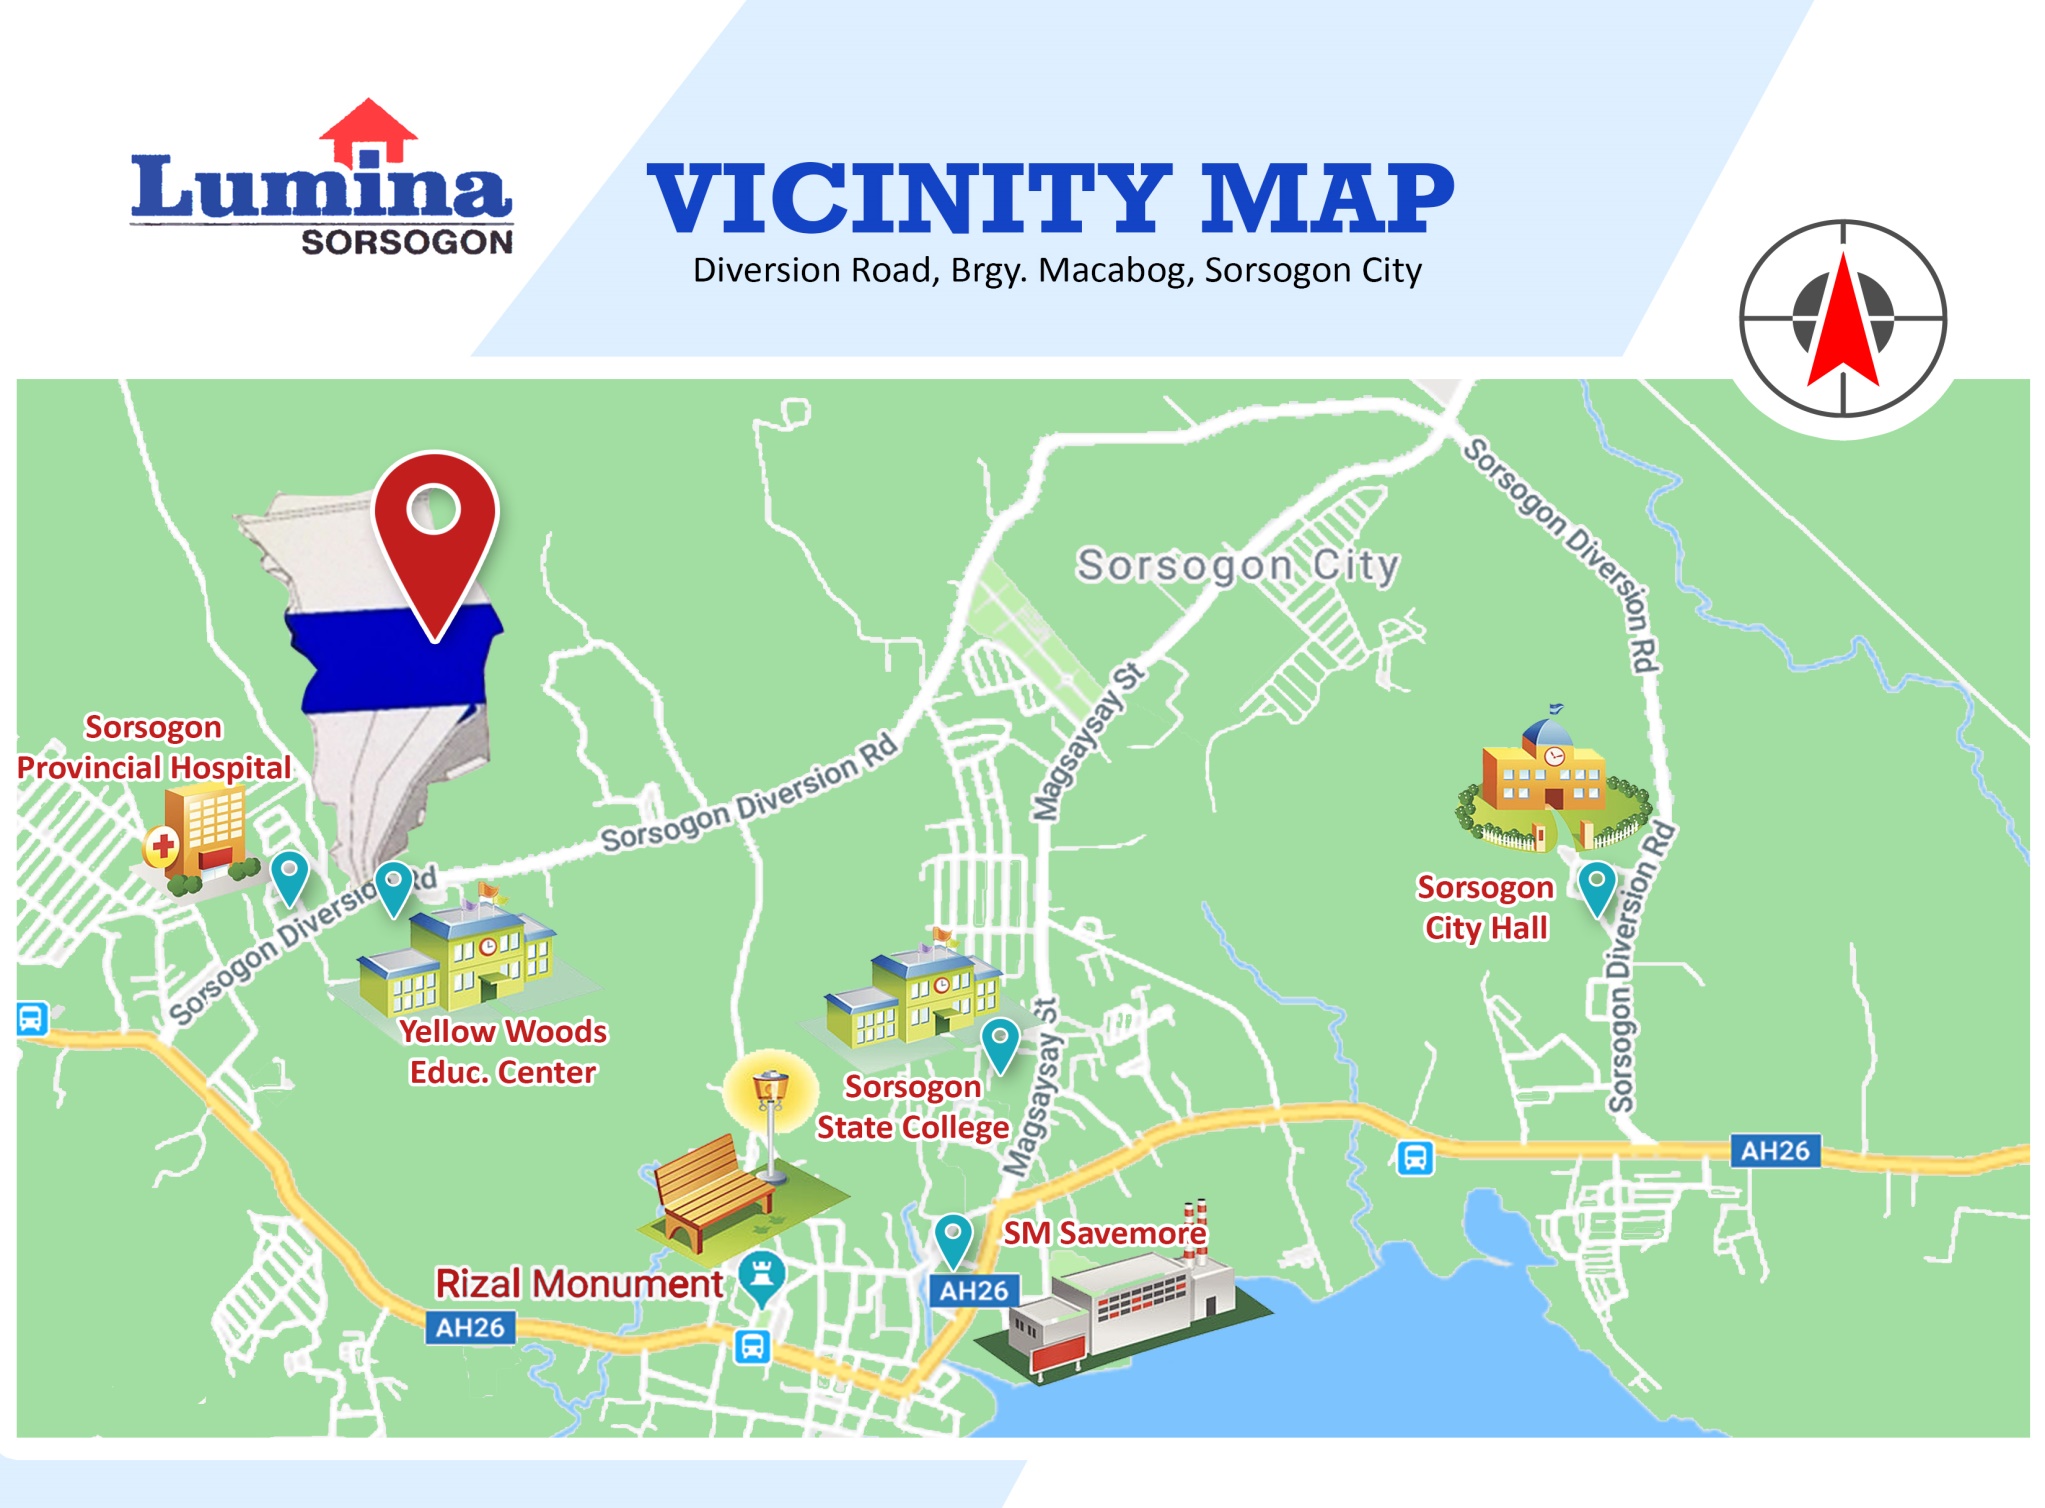 Vicinity-Map-1636441769.jpeg